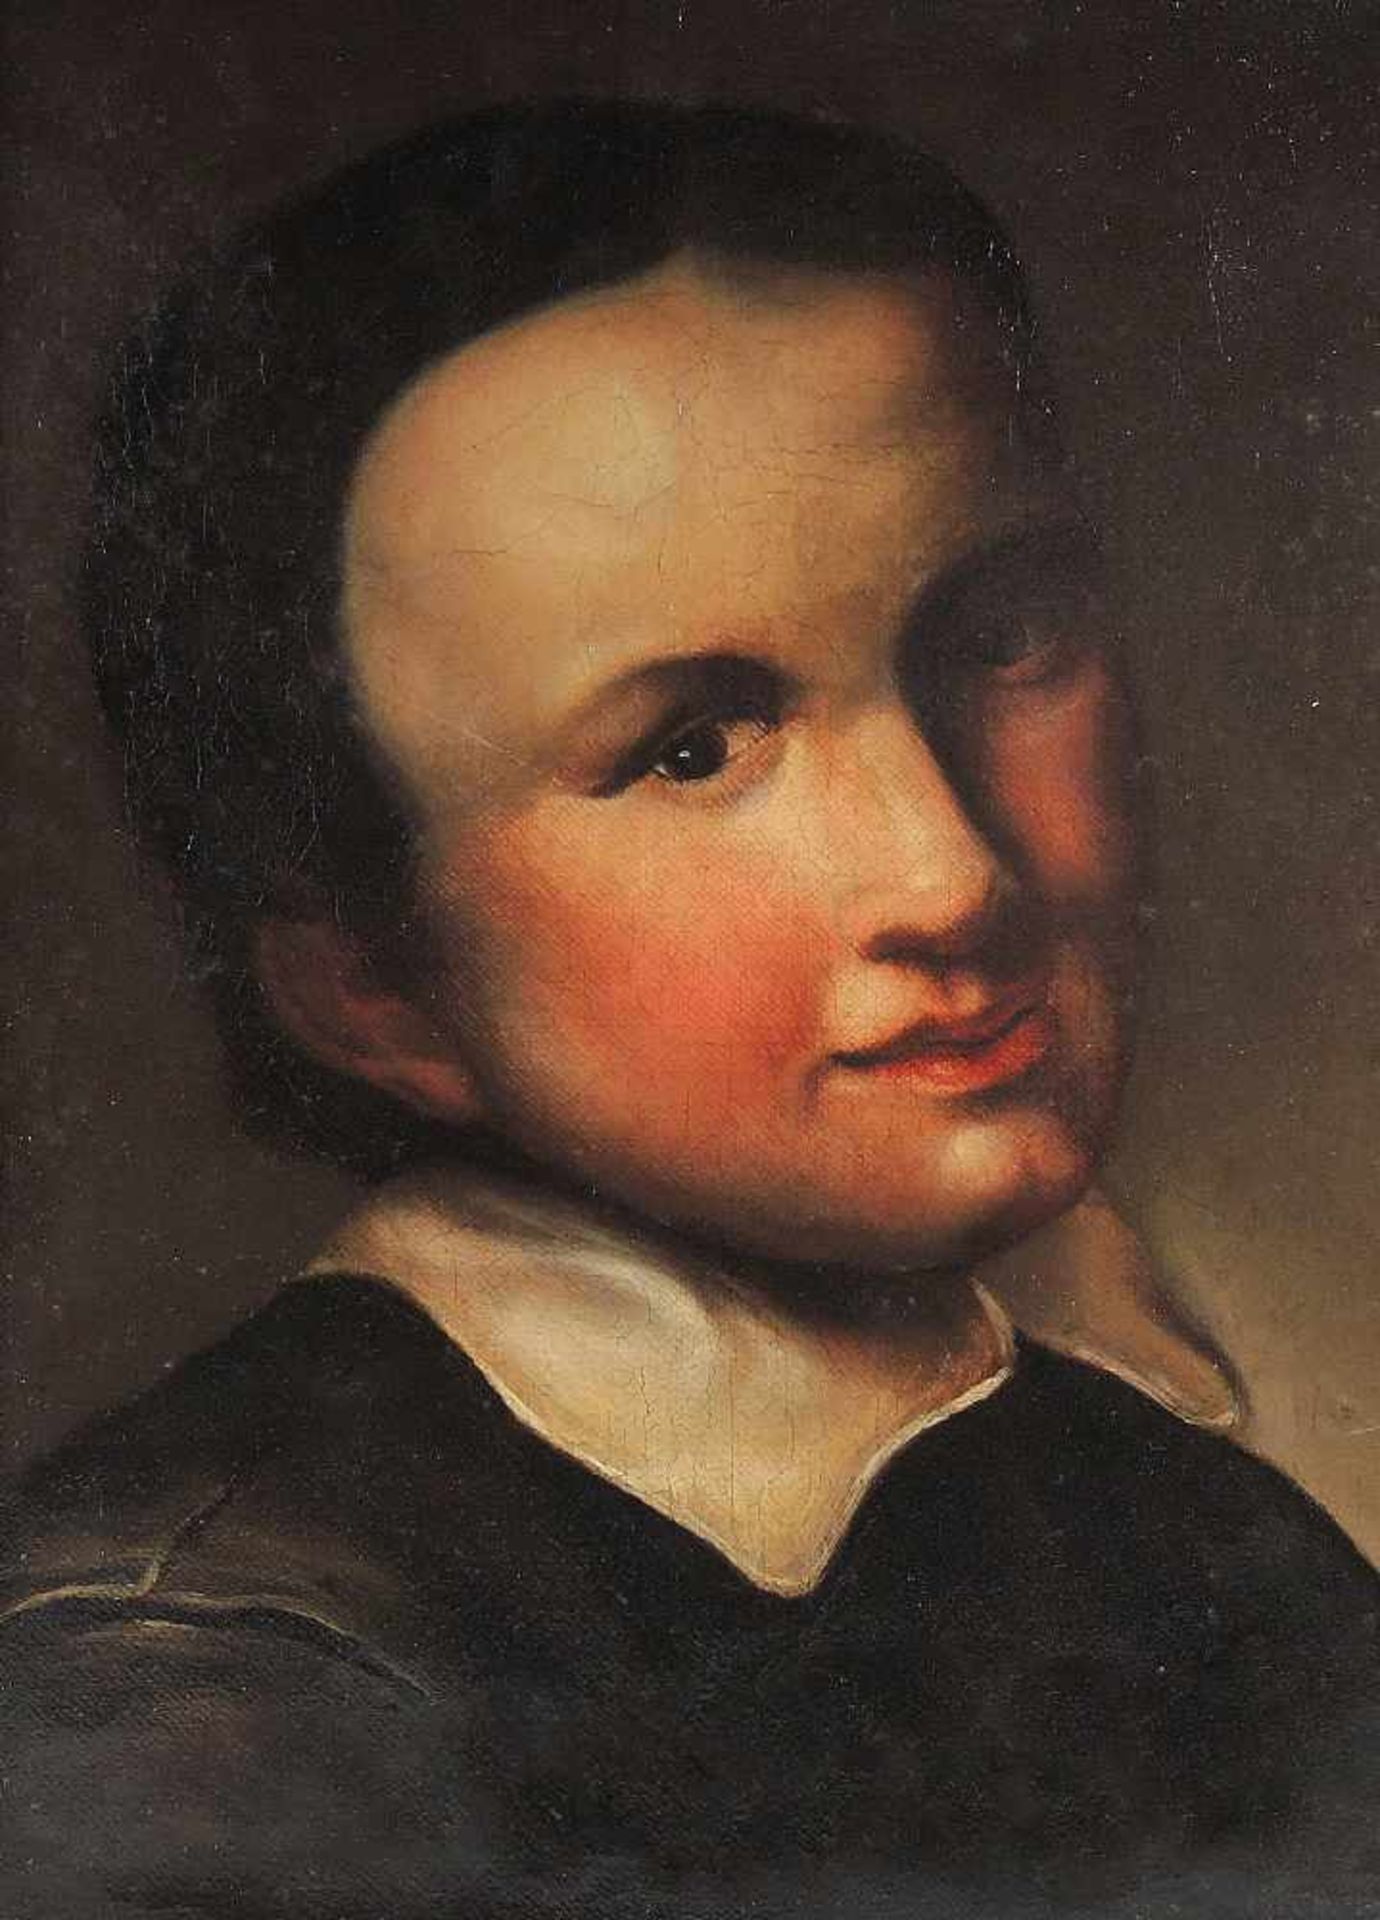 Porträt eines JünglingsÖl/Leinwand. Porträt eines jungen Mannes mit erröteten Wangen im schwarzen